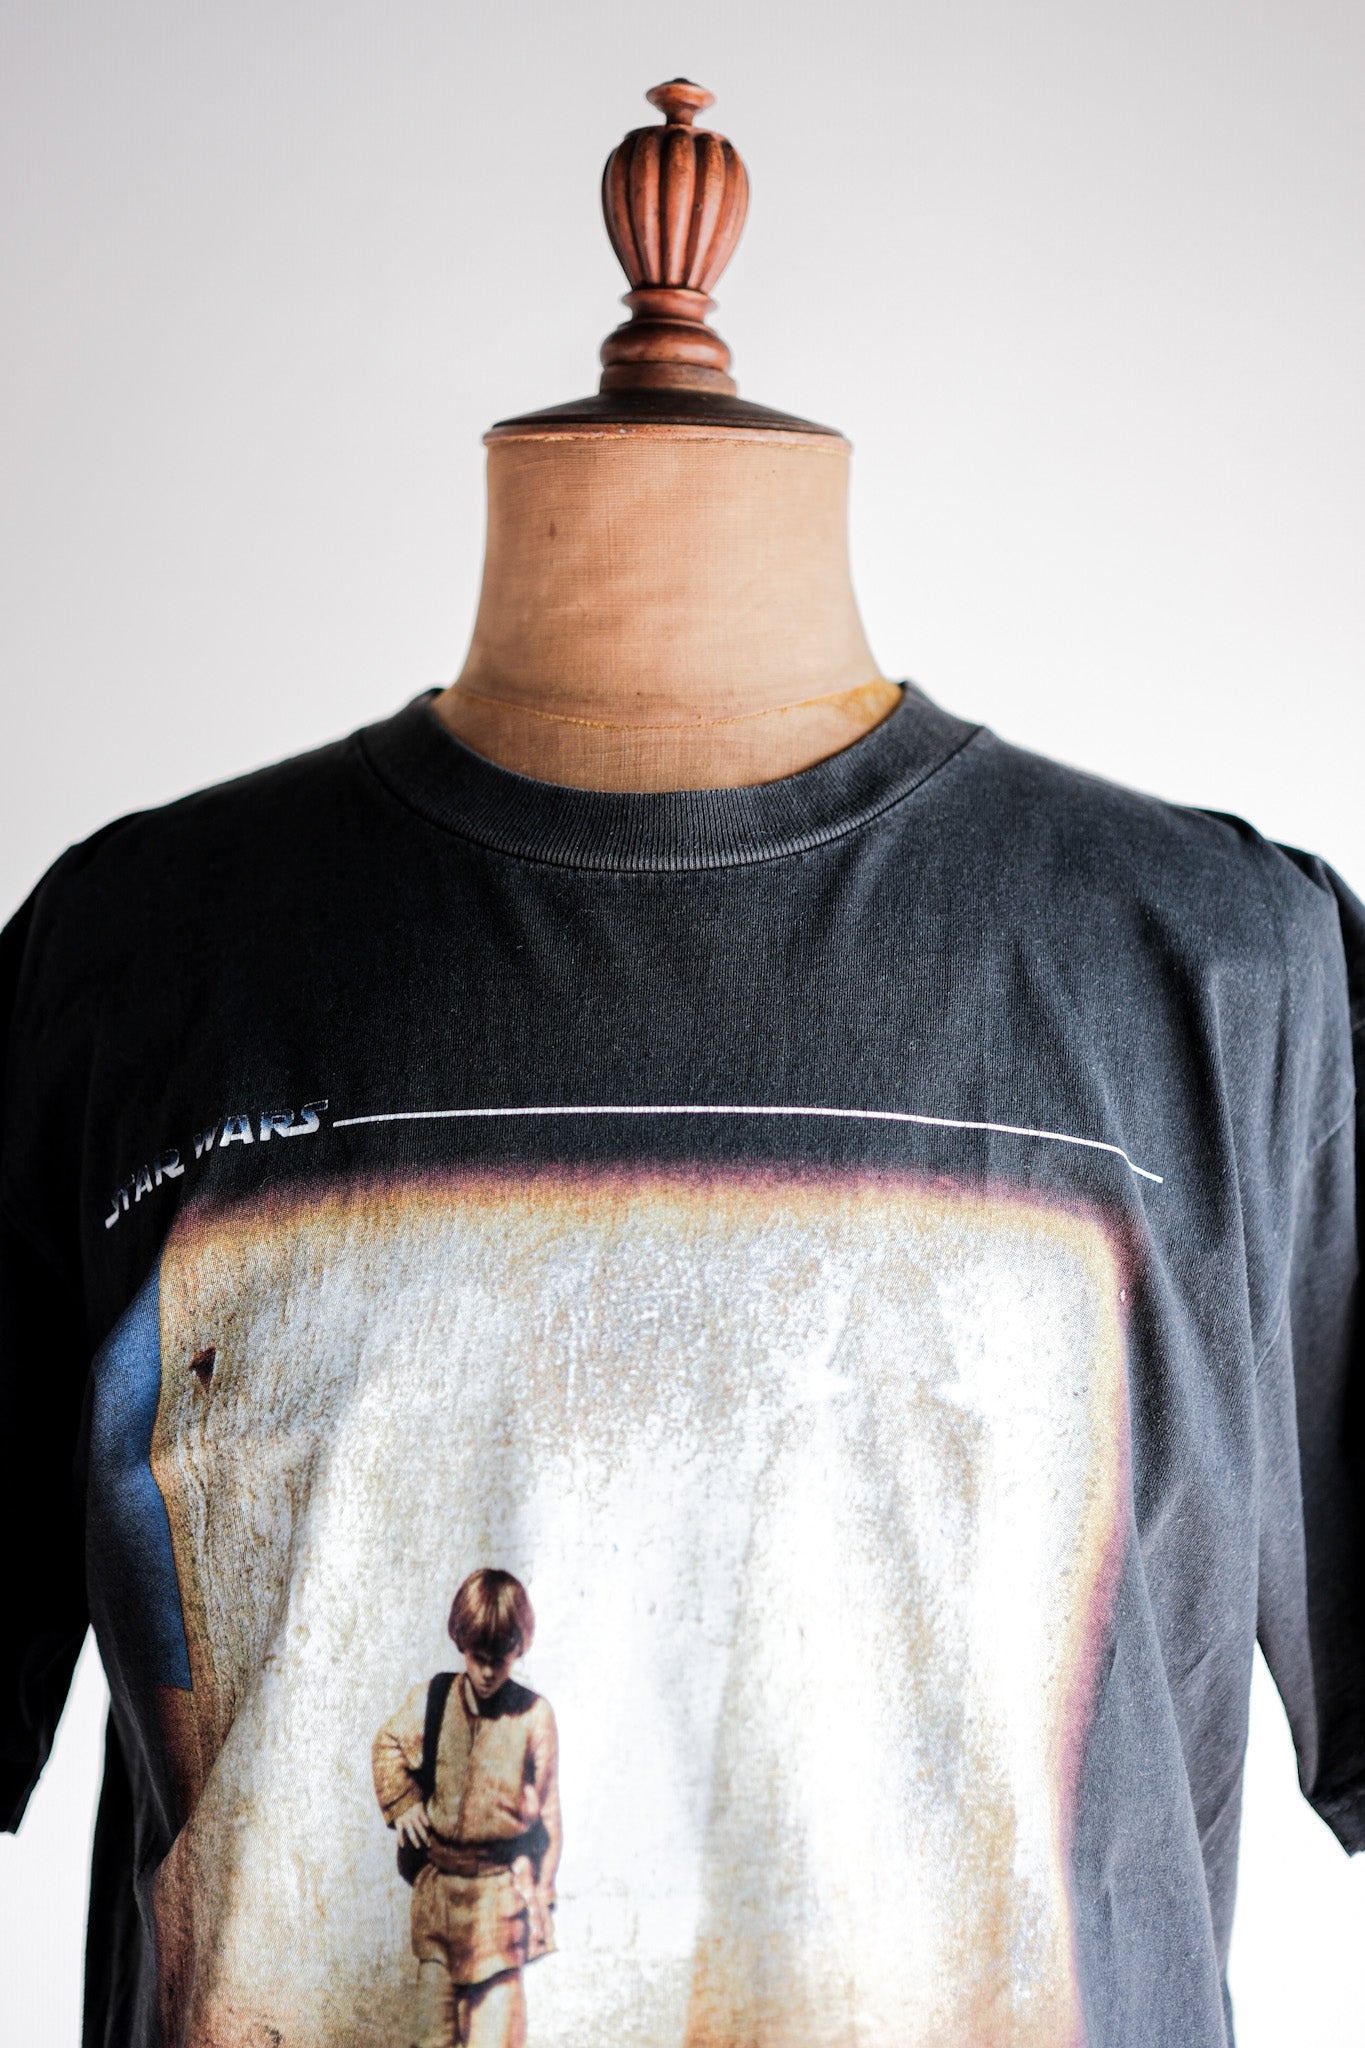 [~ 90's] T-shirt imprimé de films de bootleg vintage "Star Wars Episode I"